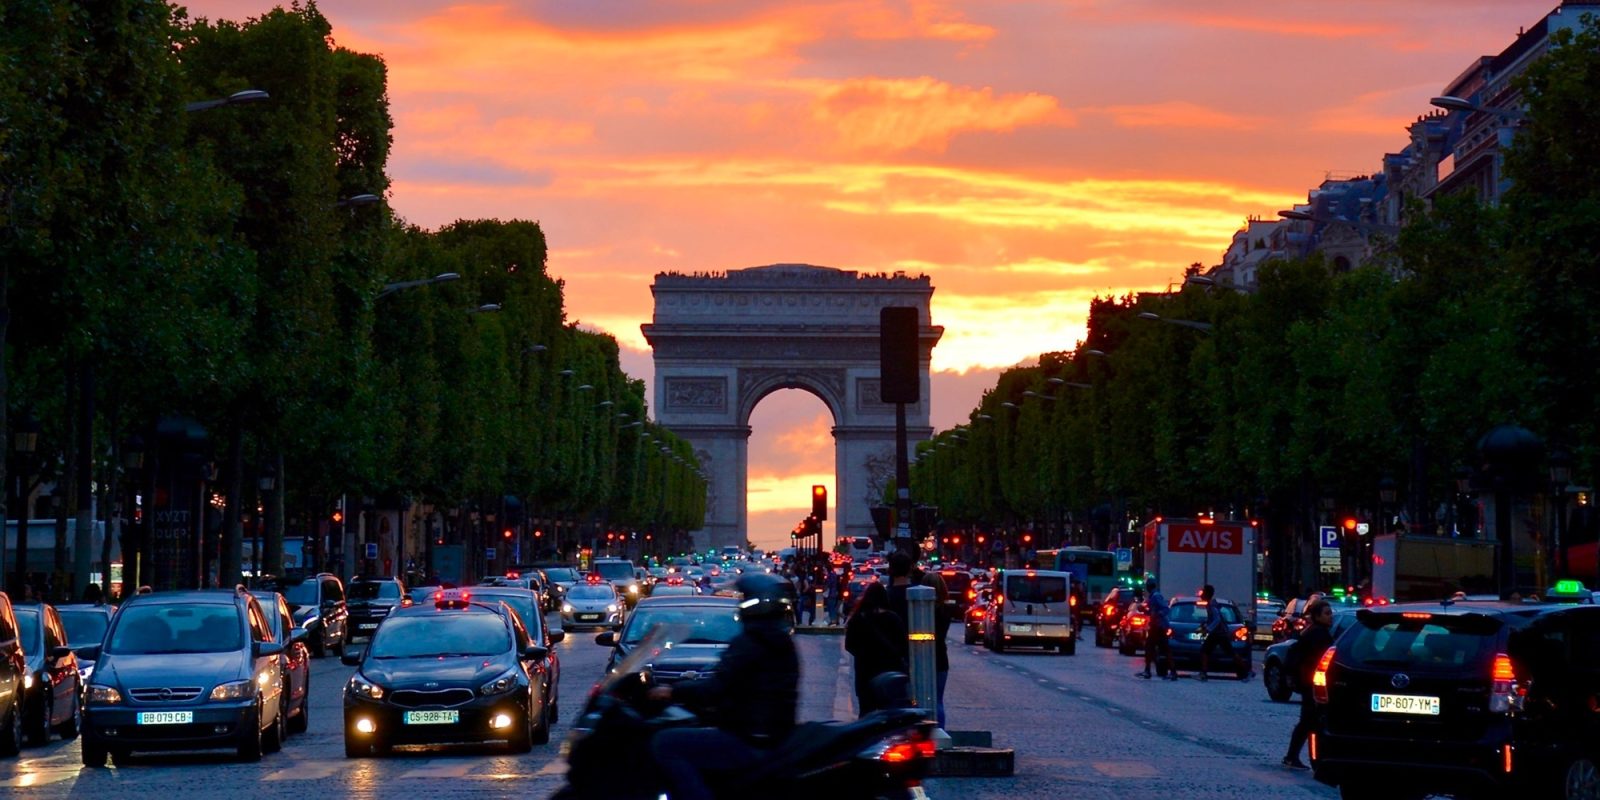 Ban cars from city. Франция Париж Елисейские поля. Триумфальная арка (Франция). Париж Елисейские поля и Триумфальная арка. Paris.